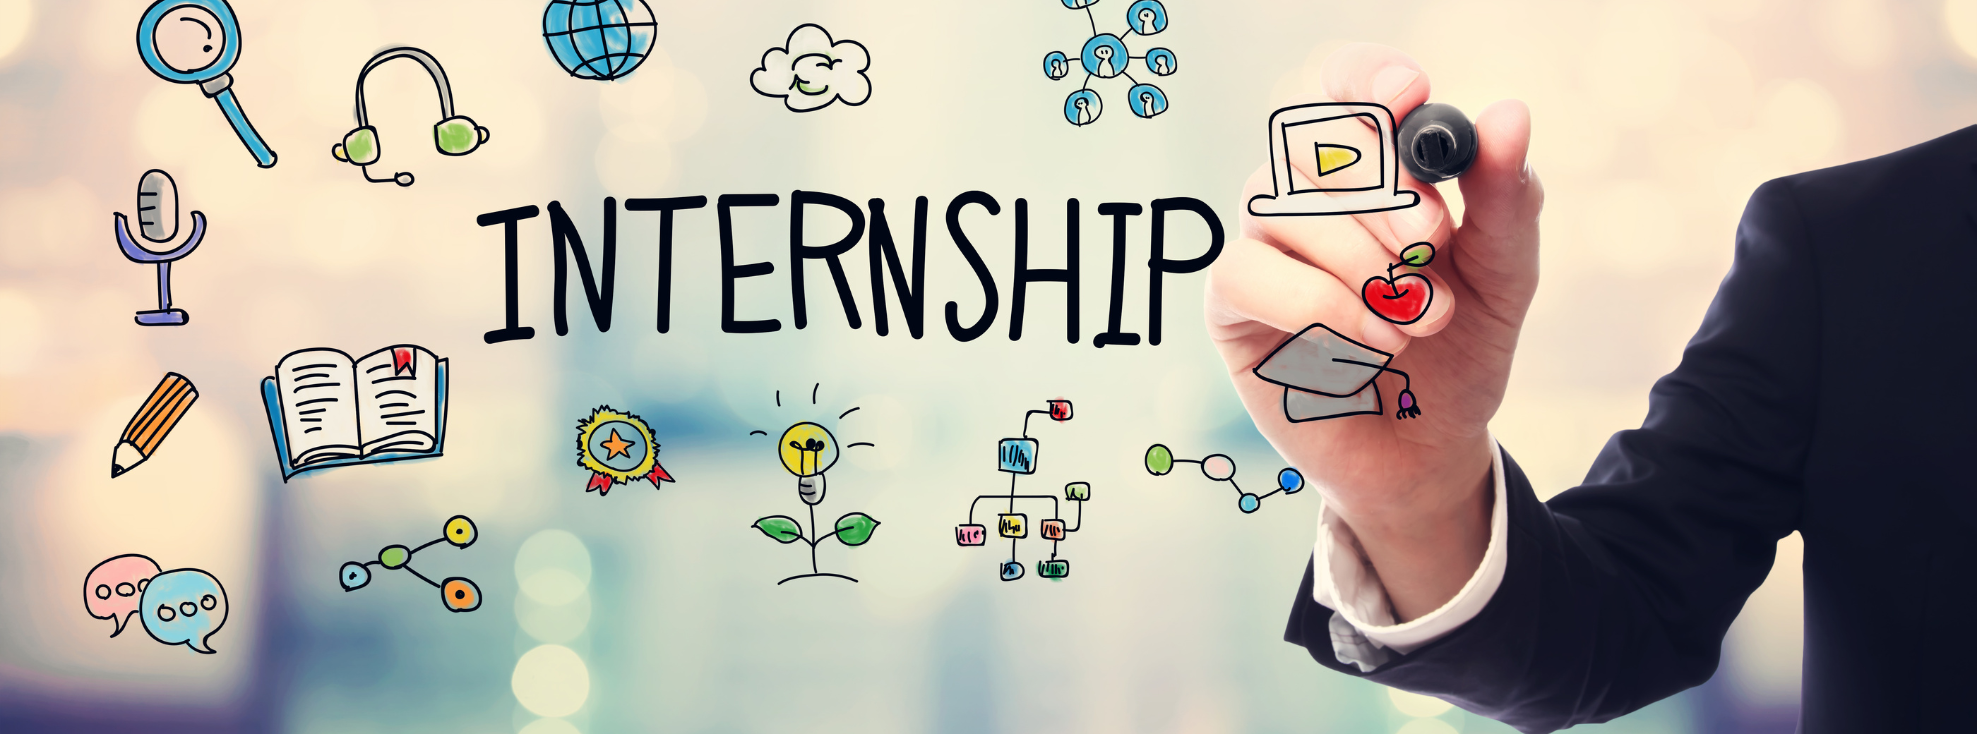 BPU offers ongoing internship opportunities